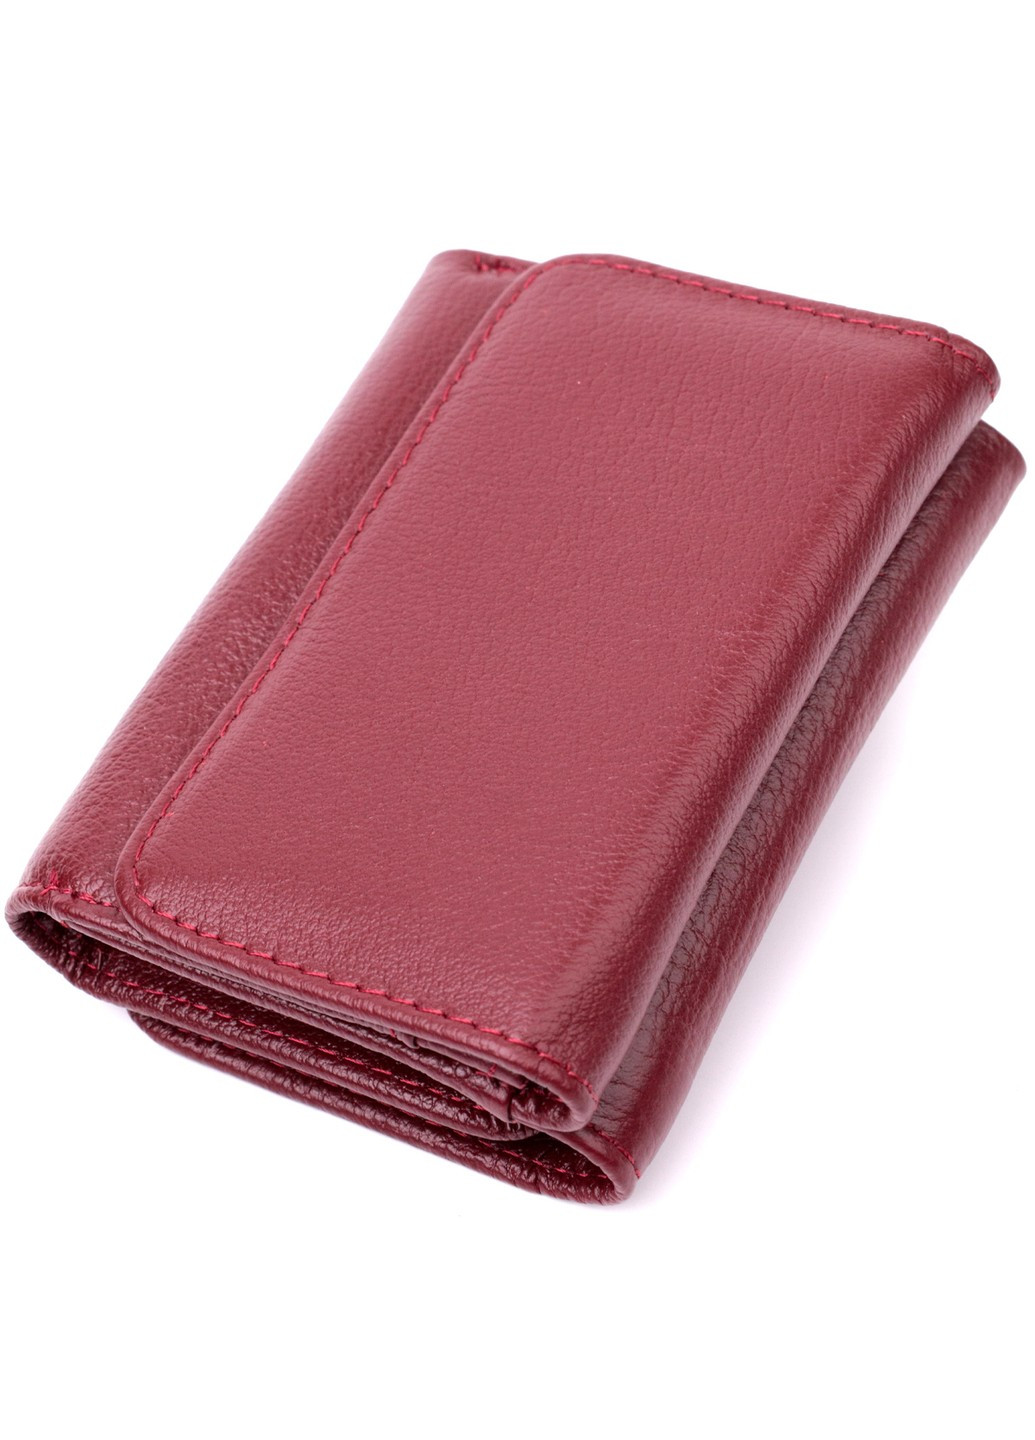 Женский кошелек горизонтального типа из натуральной кожи 19479 Бордовый st leather (277980576)